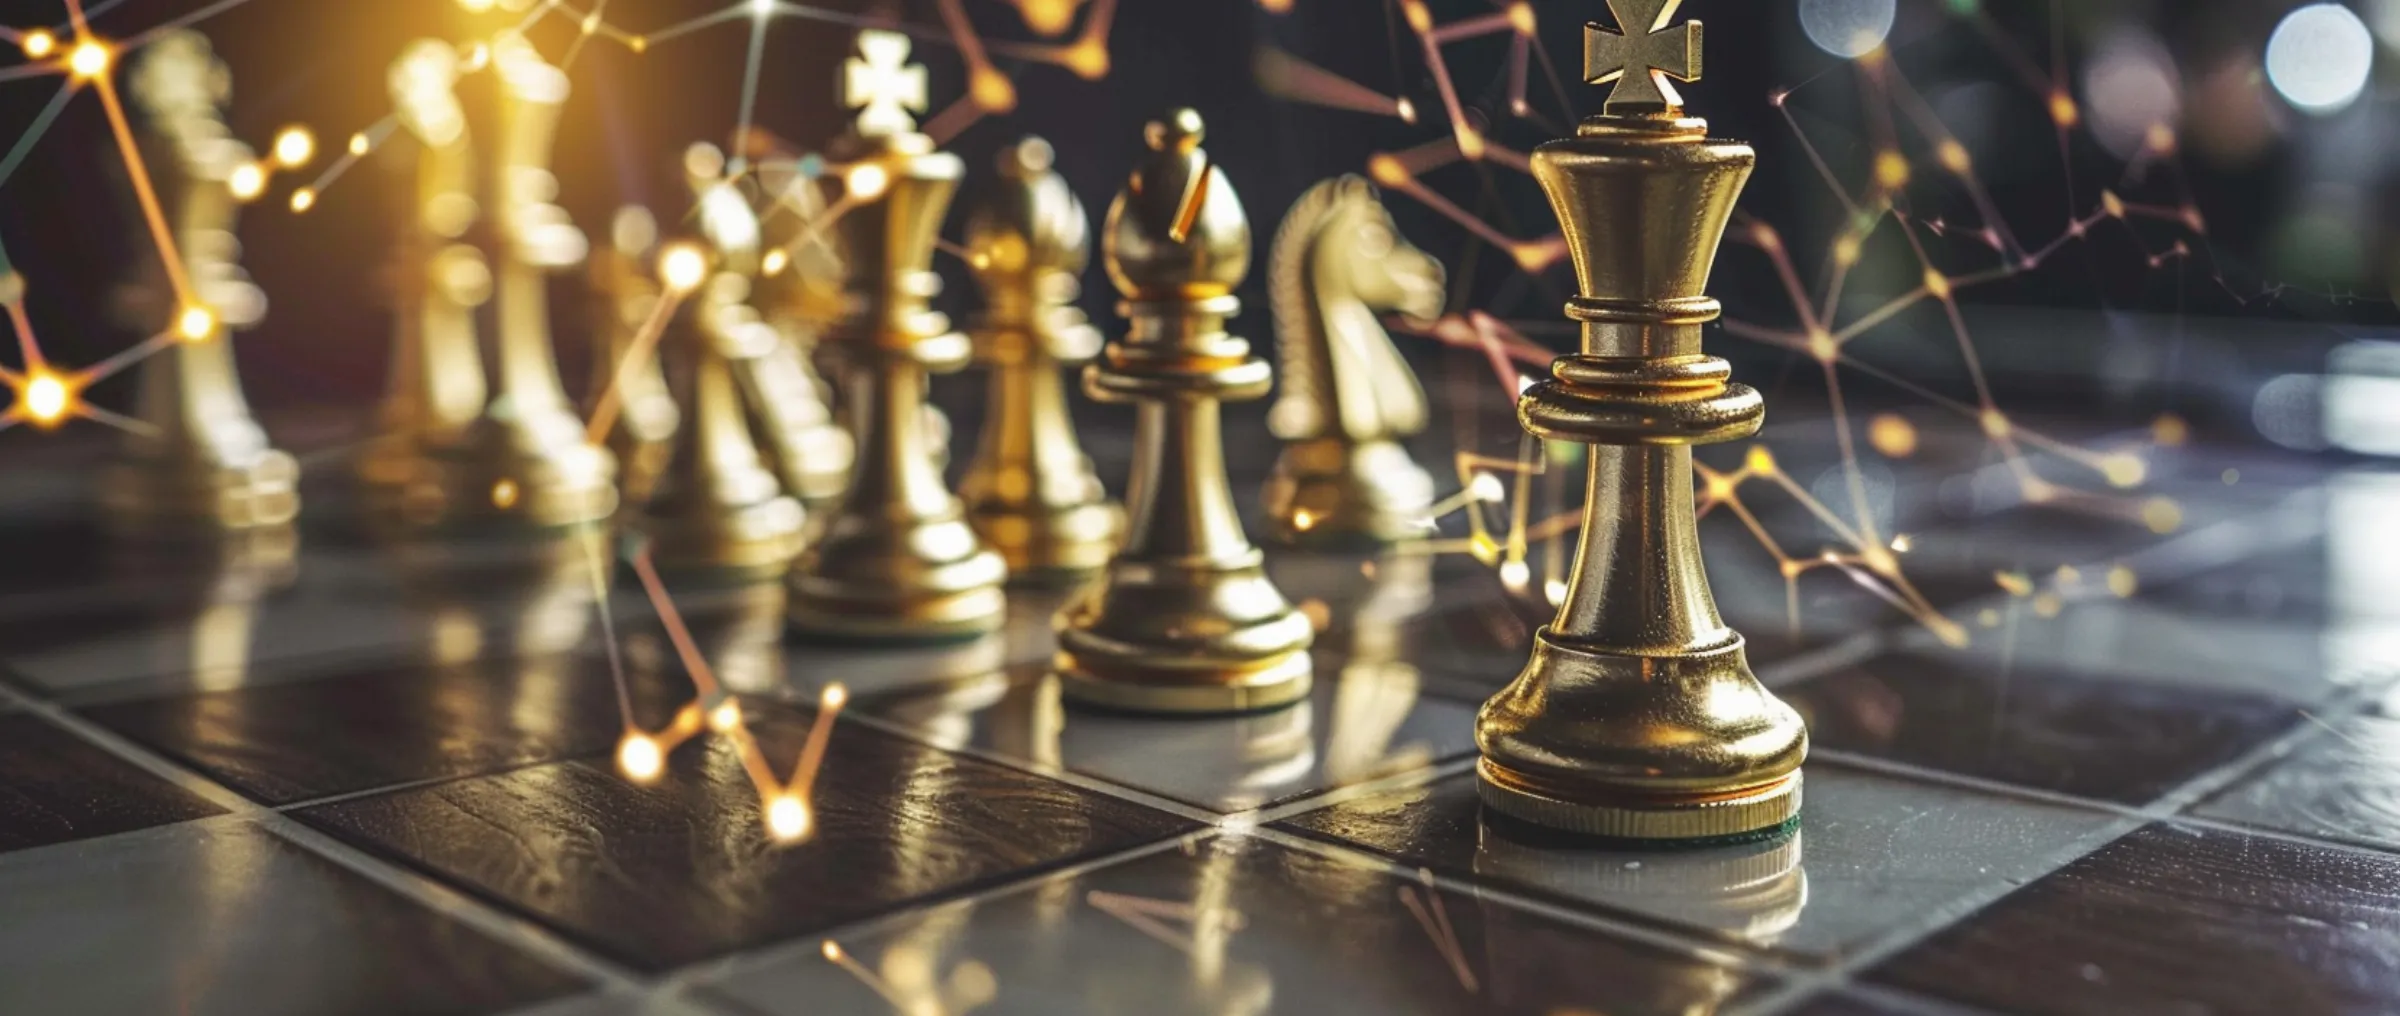 AniChess привлекает 1,8 млн долларов для инноваций в шахматах через блокчейн-технологии